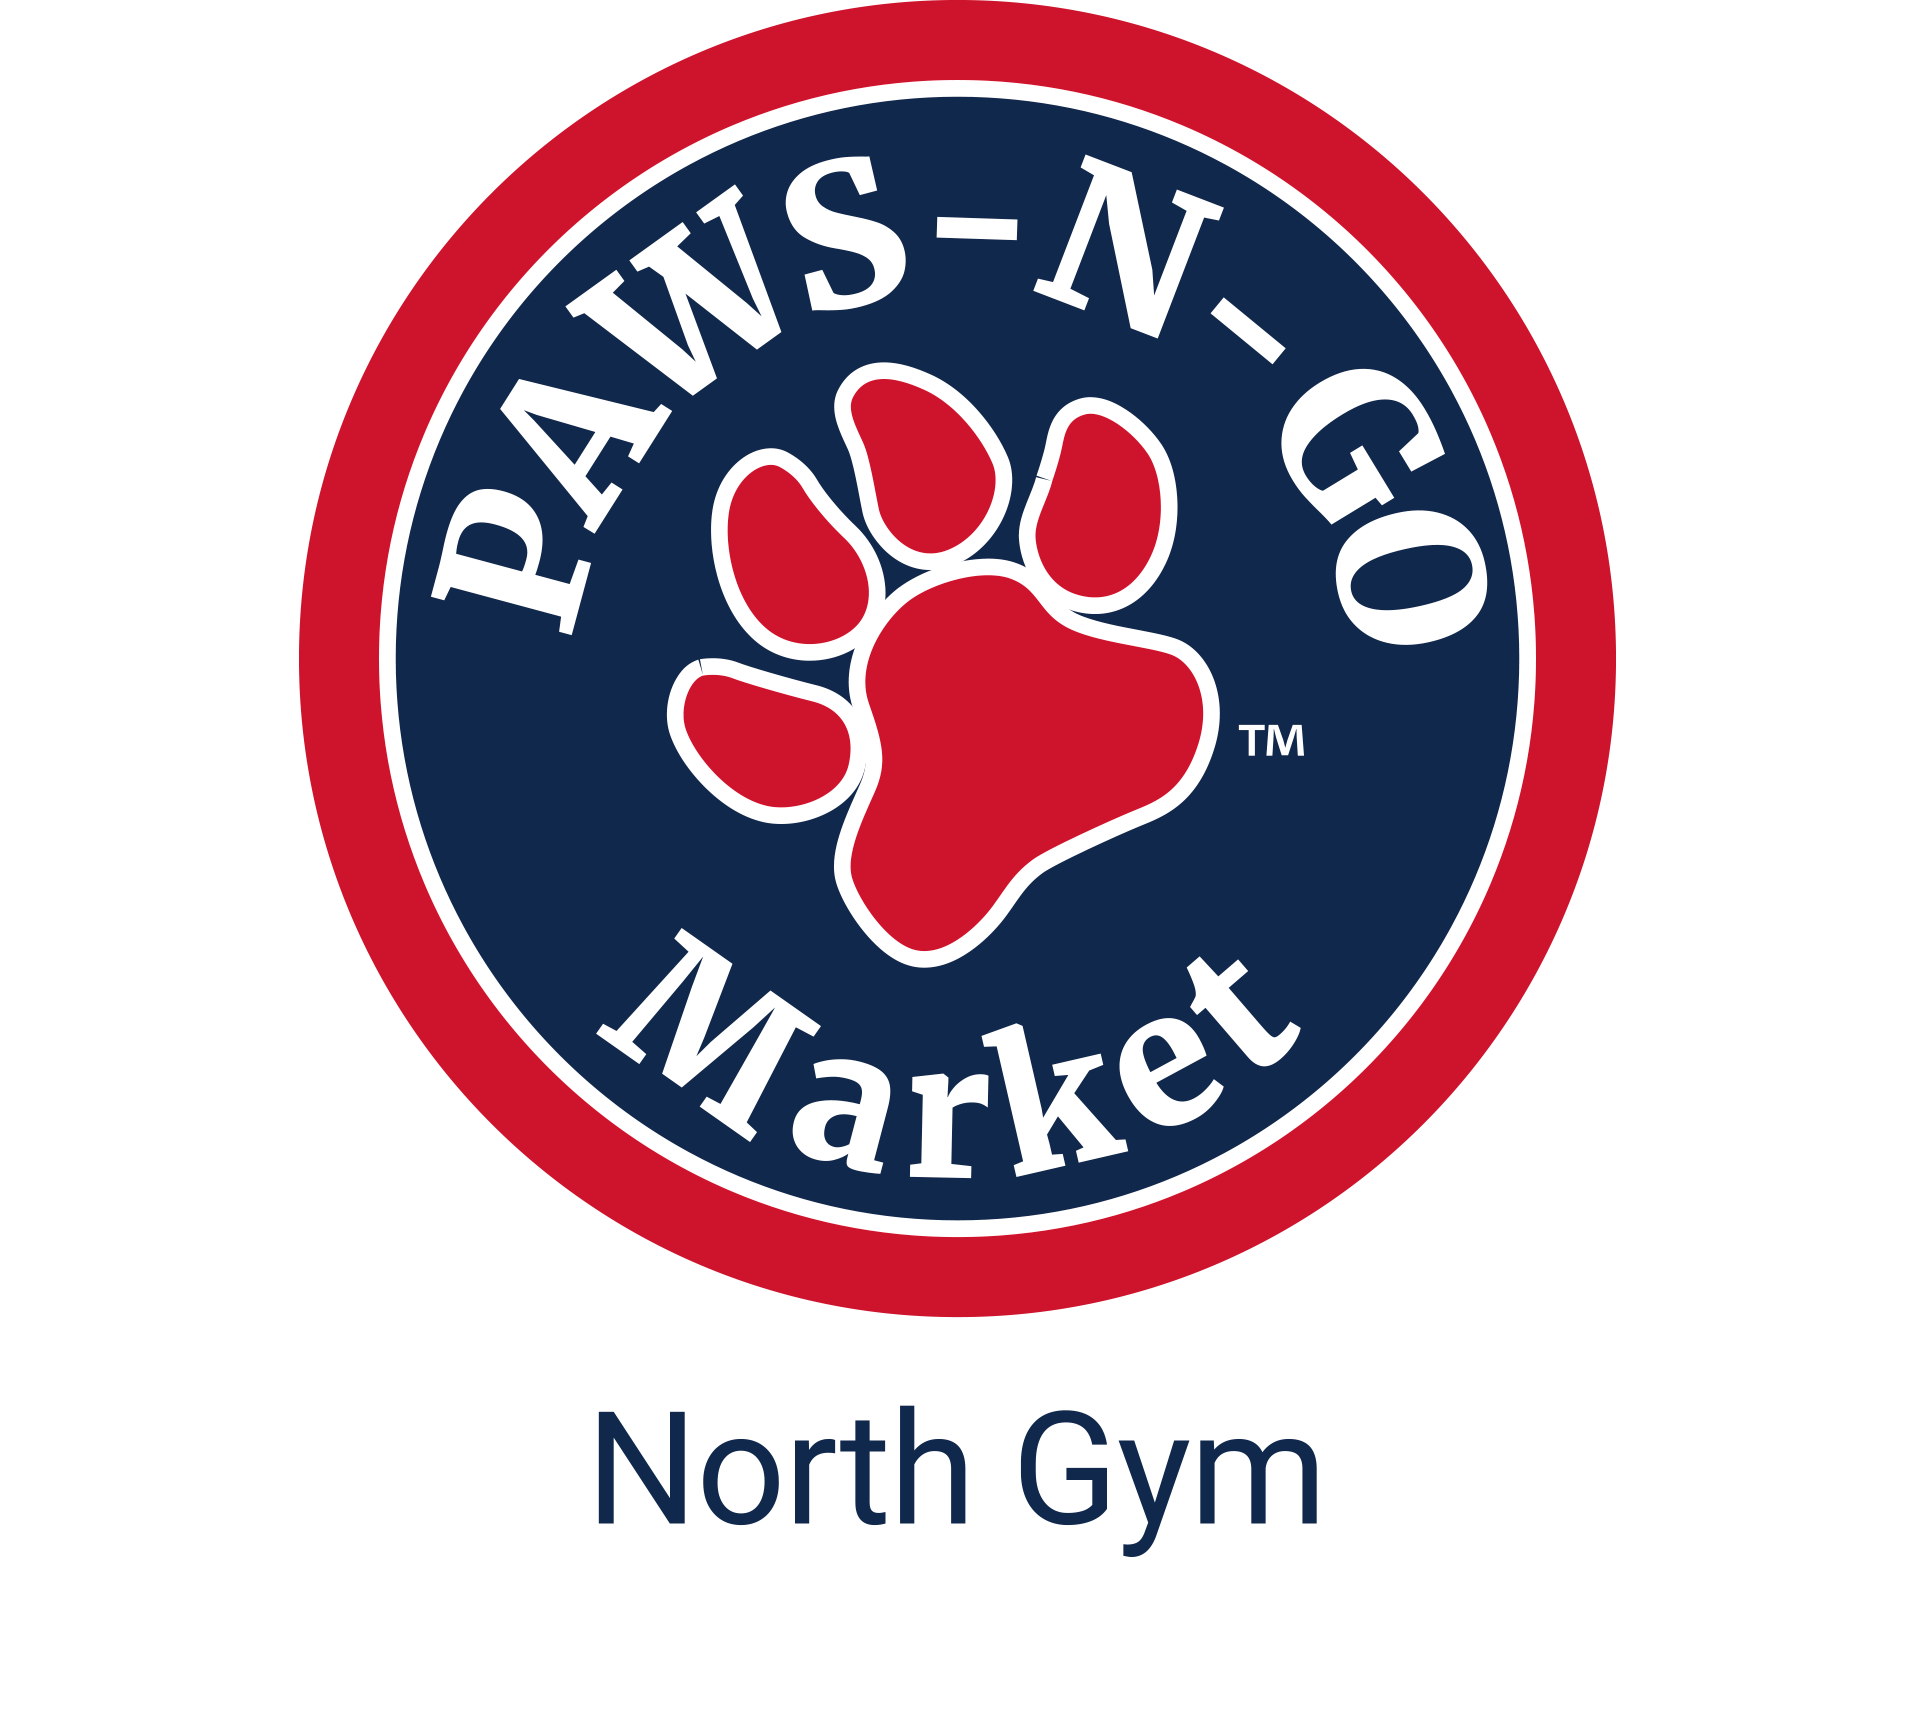 North Gym Paws-N-Go